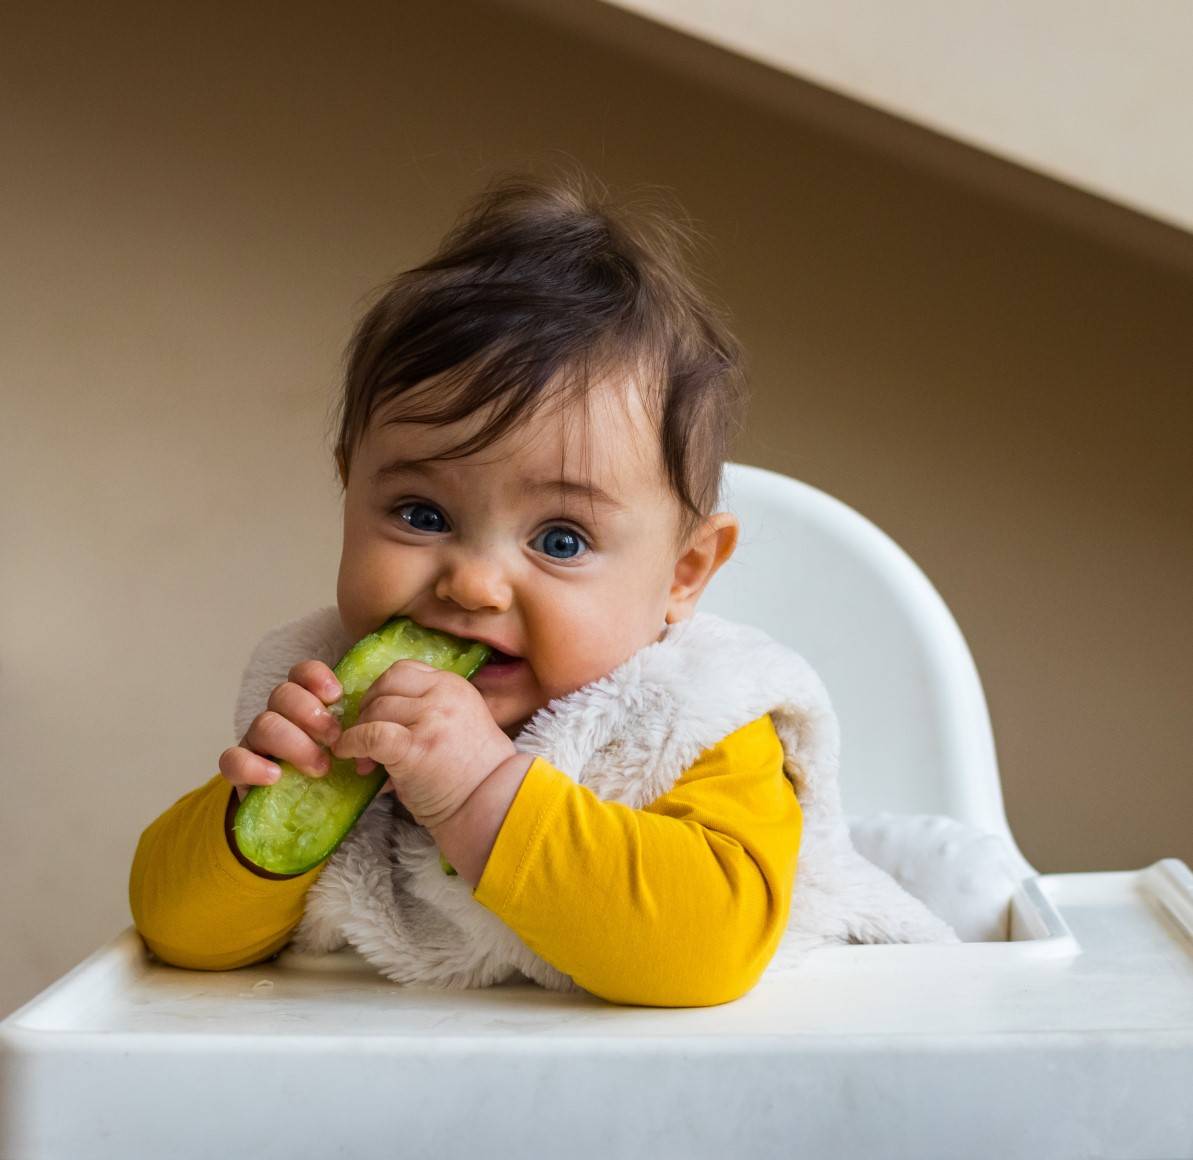 Jaka powinna być konsystencja posiłków dla niemowlaka?